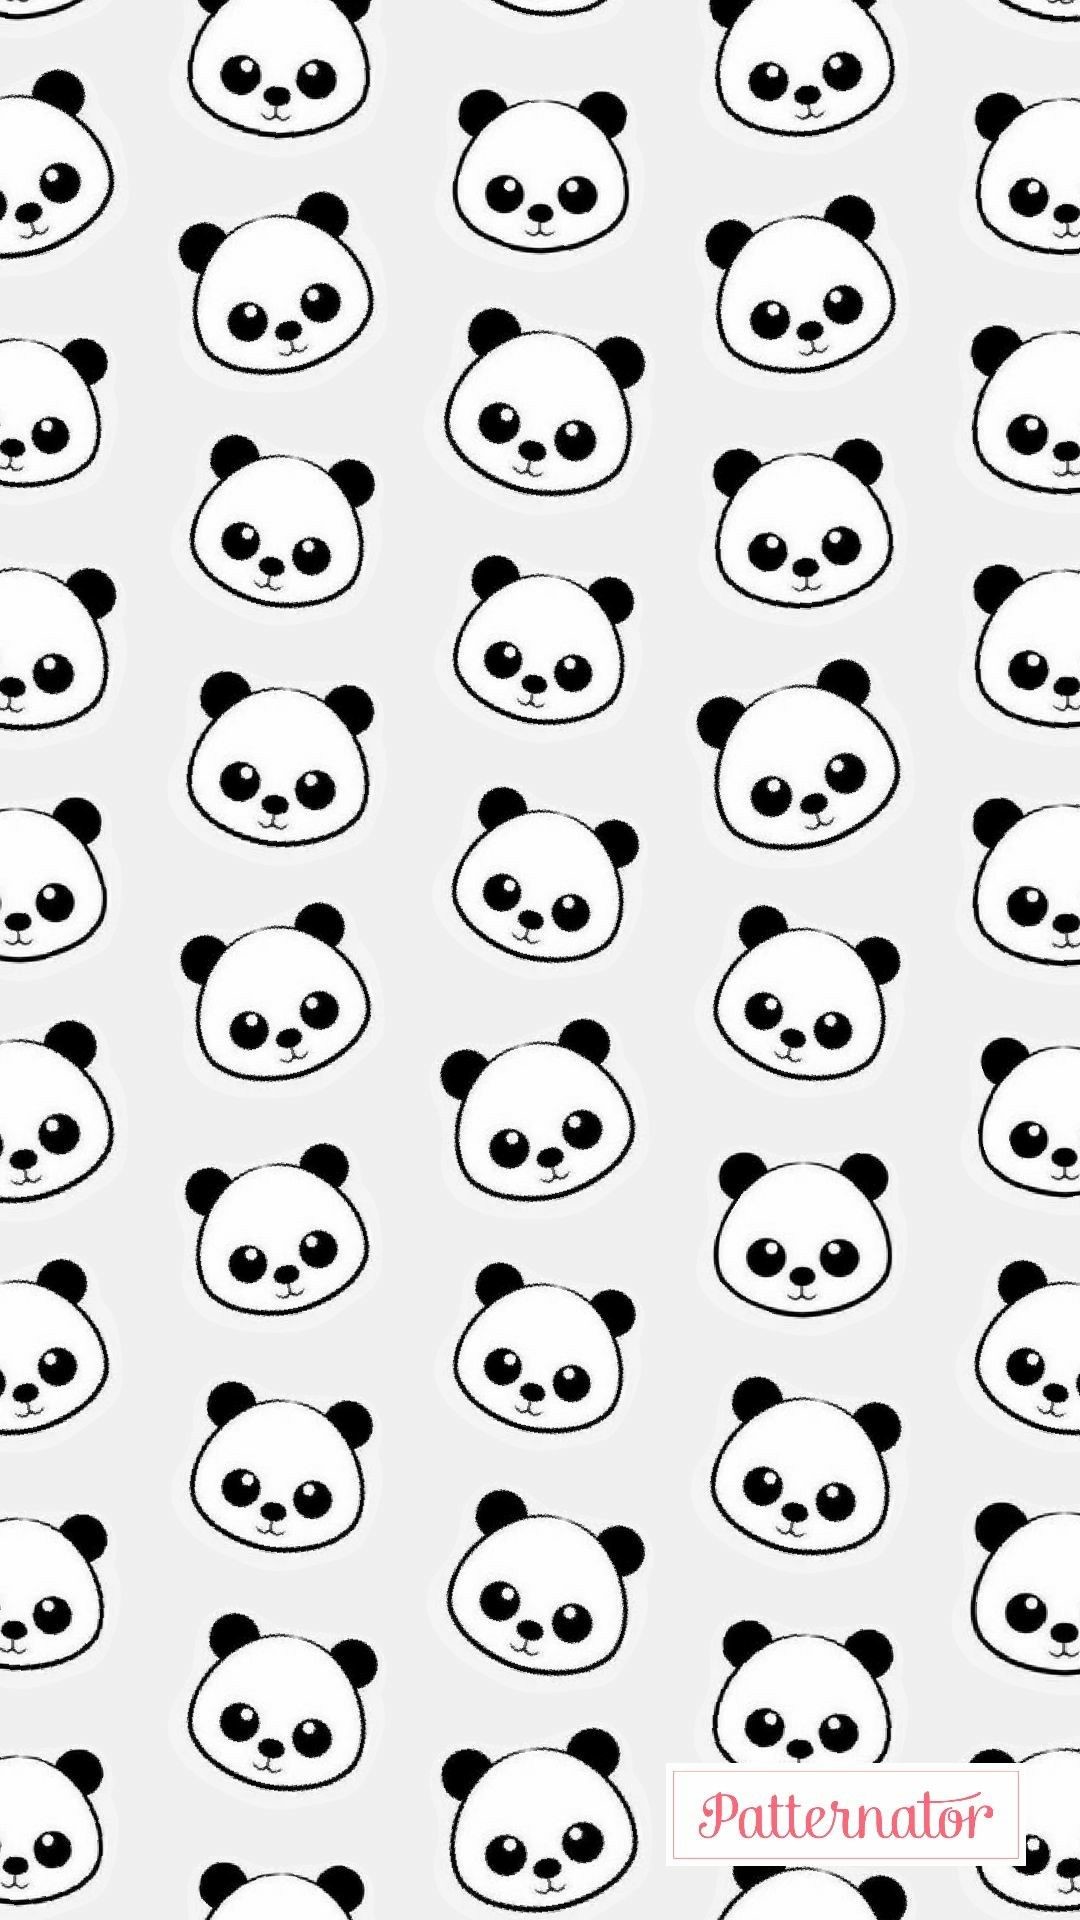 1080x1920 Wallpaper ~ Panda Panda Wallpapers, Cute Wallpapers, Iphone Wallpapers,  Cool Wallpaper, Kawaii